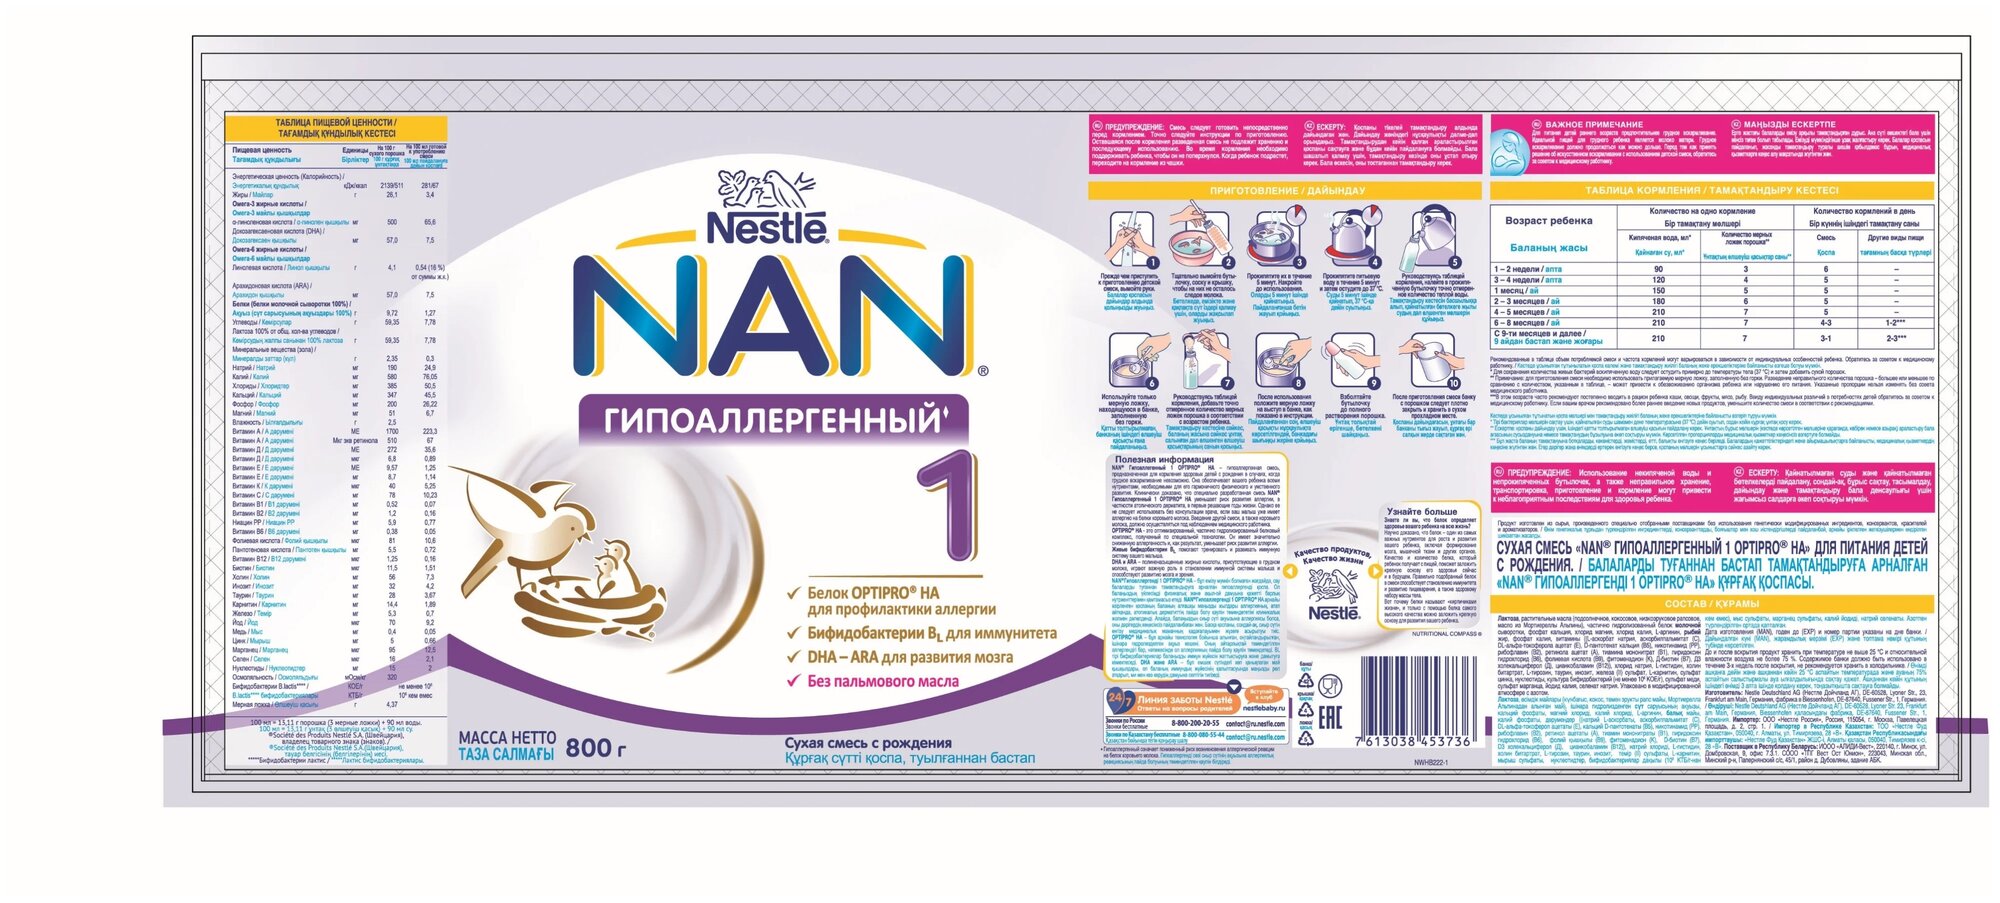 Смесь Nestle NAN ГА 1 с бифидобактериями 400 г NAN (Nestle) - фото №7